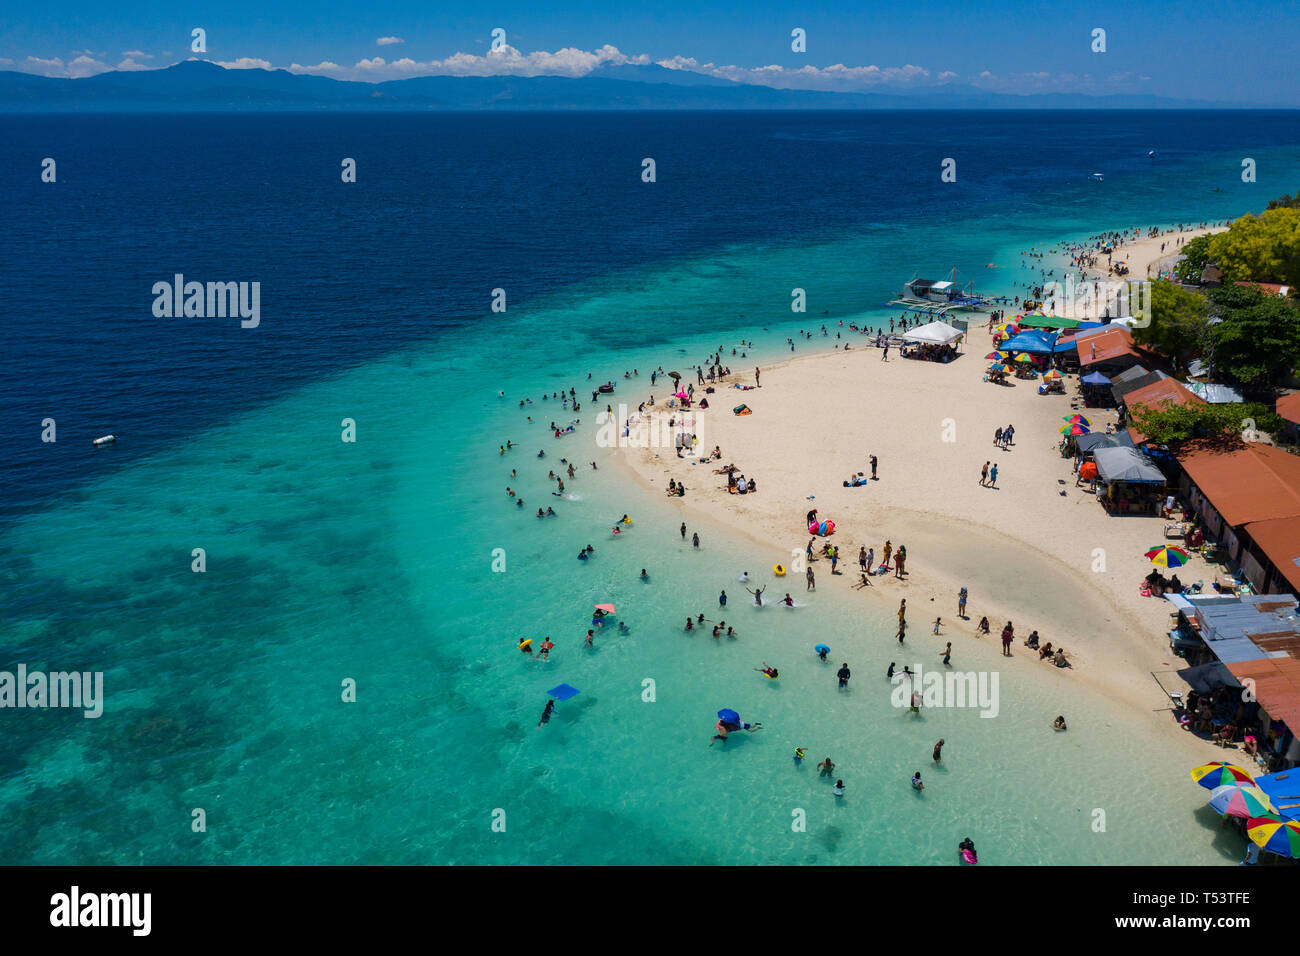 Luftaufnahme der Küste entlang Moalboal, Cebu - Strand bekannt als Basdaku White Beach.Bild aufgenommen während der Karwoche Wochenende April 2019 w Stockfoto